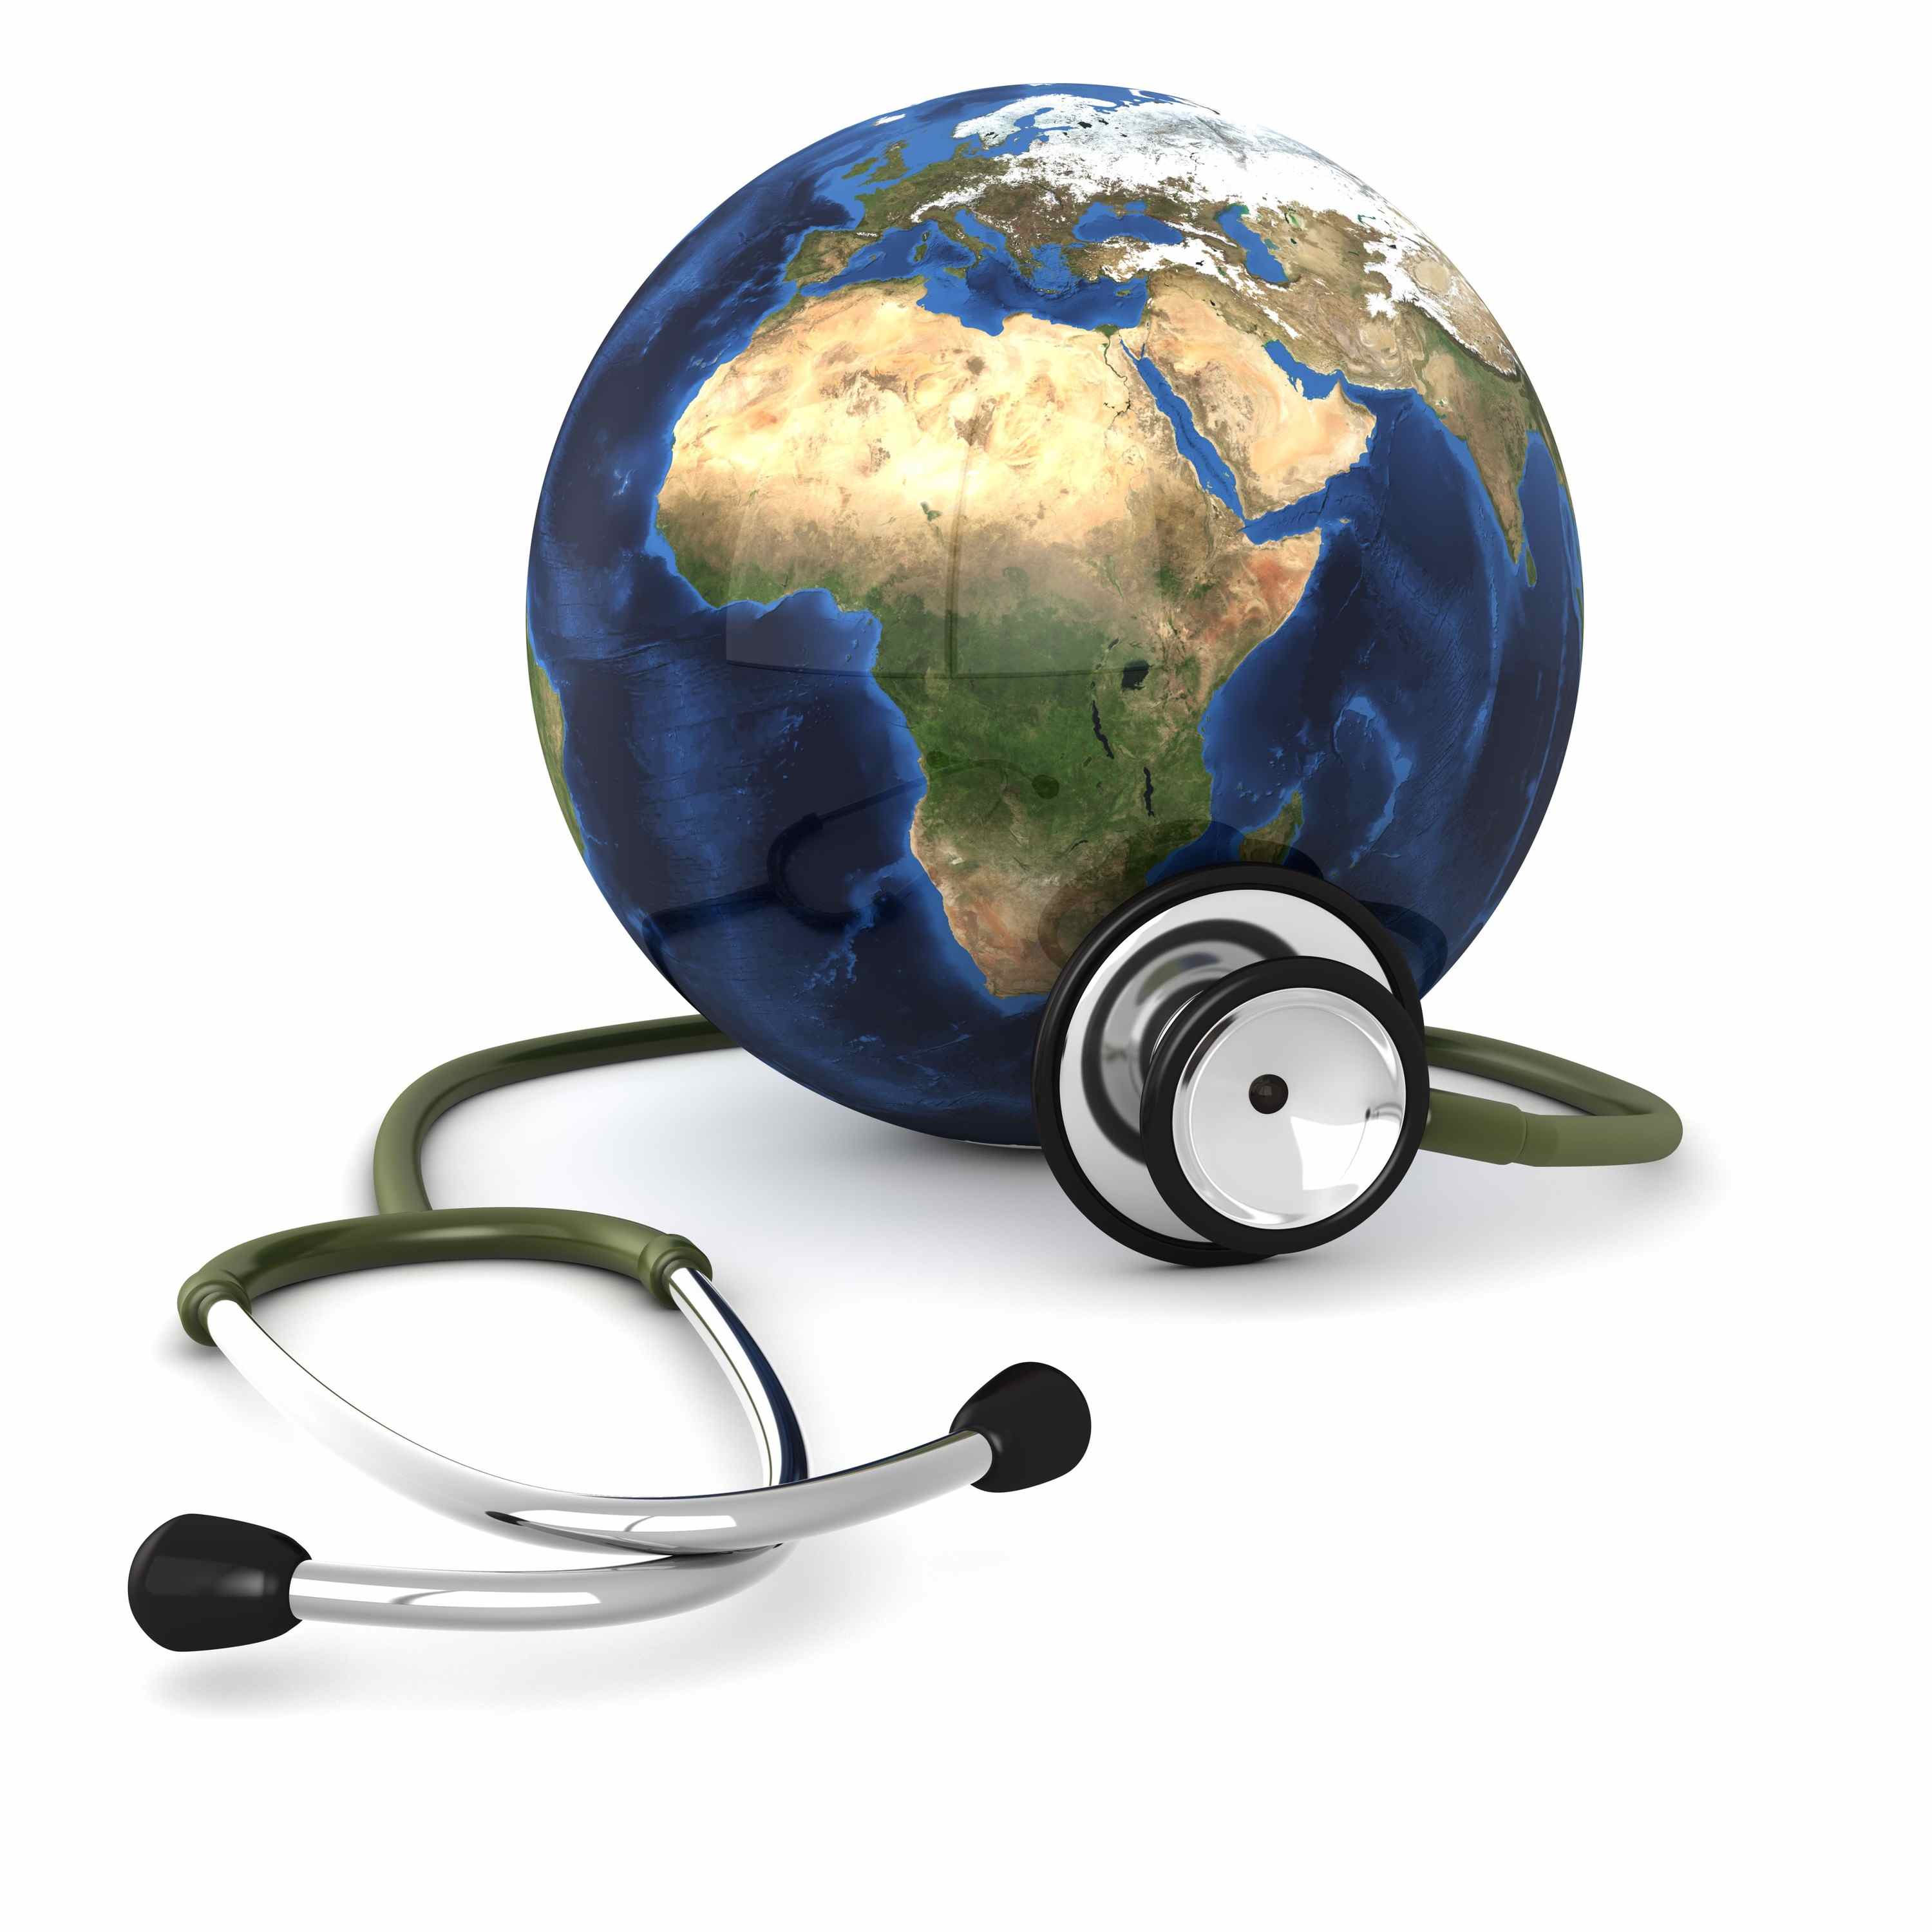 global health